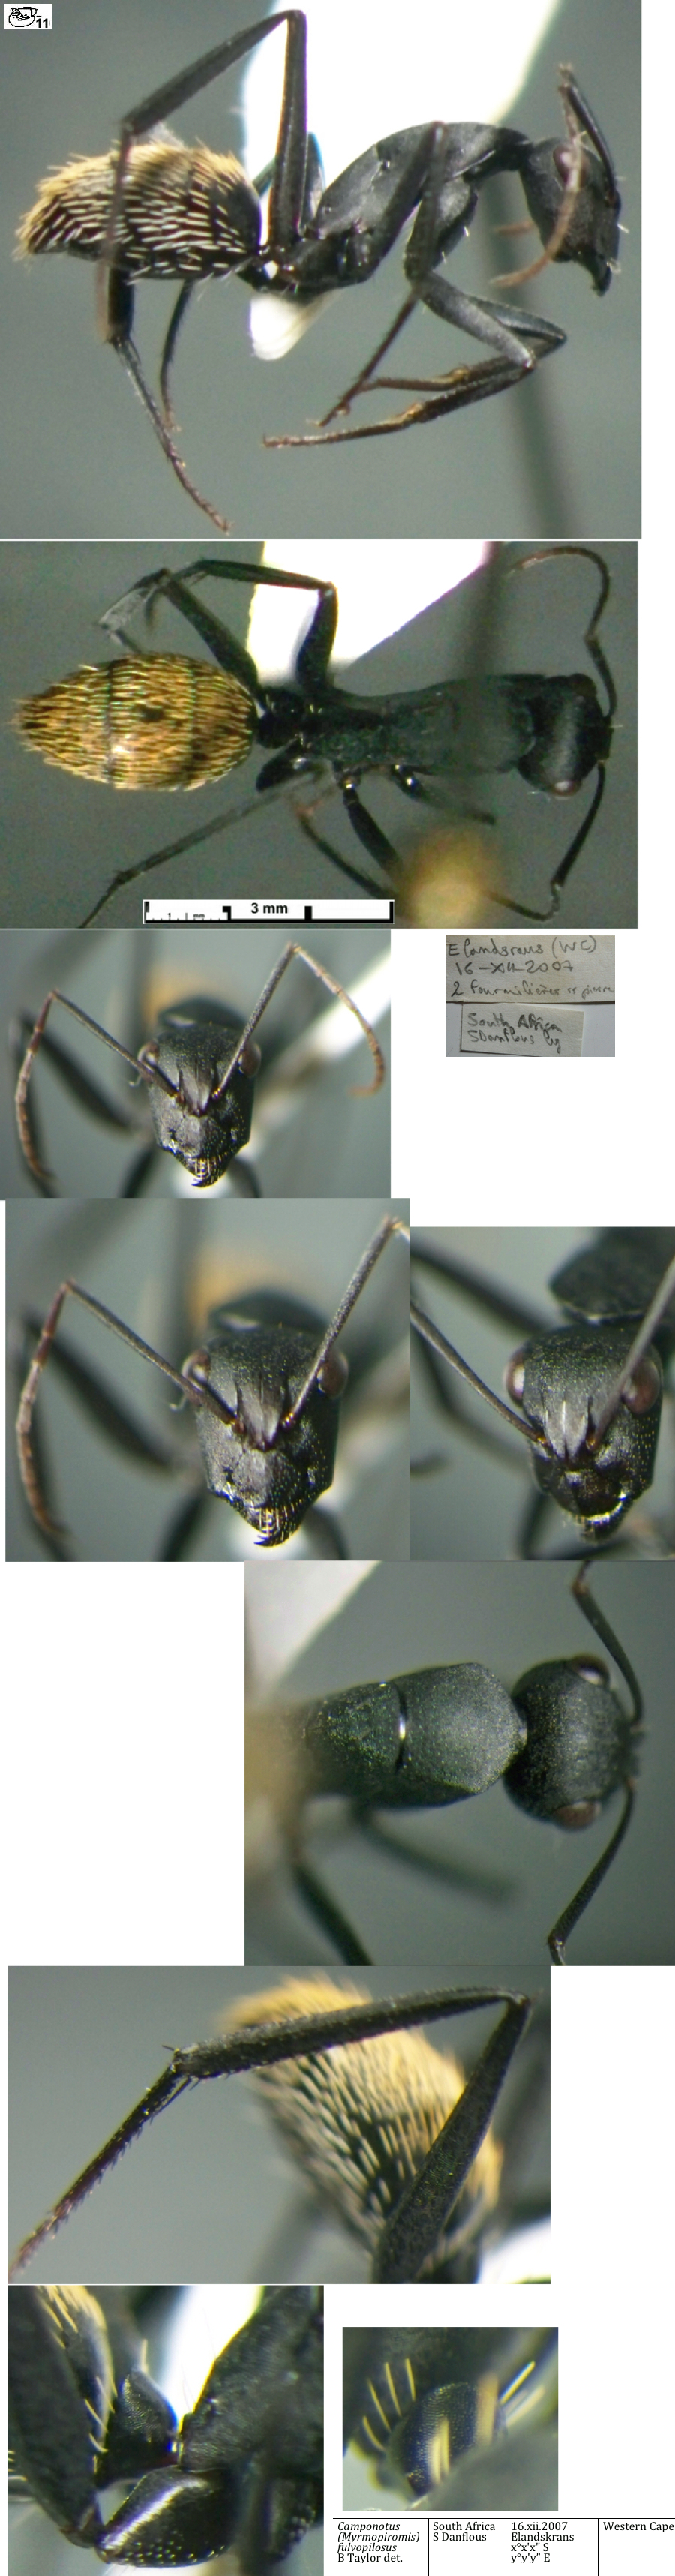 {Camponotus fulvopilosus minor}